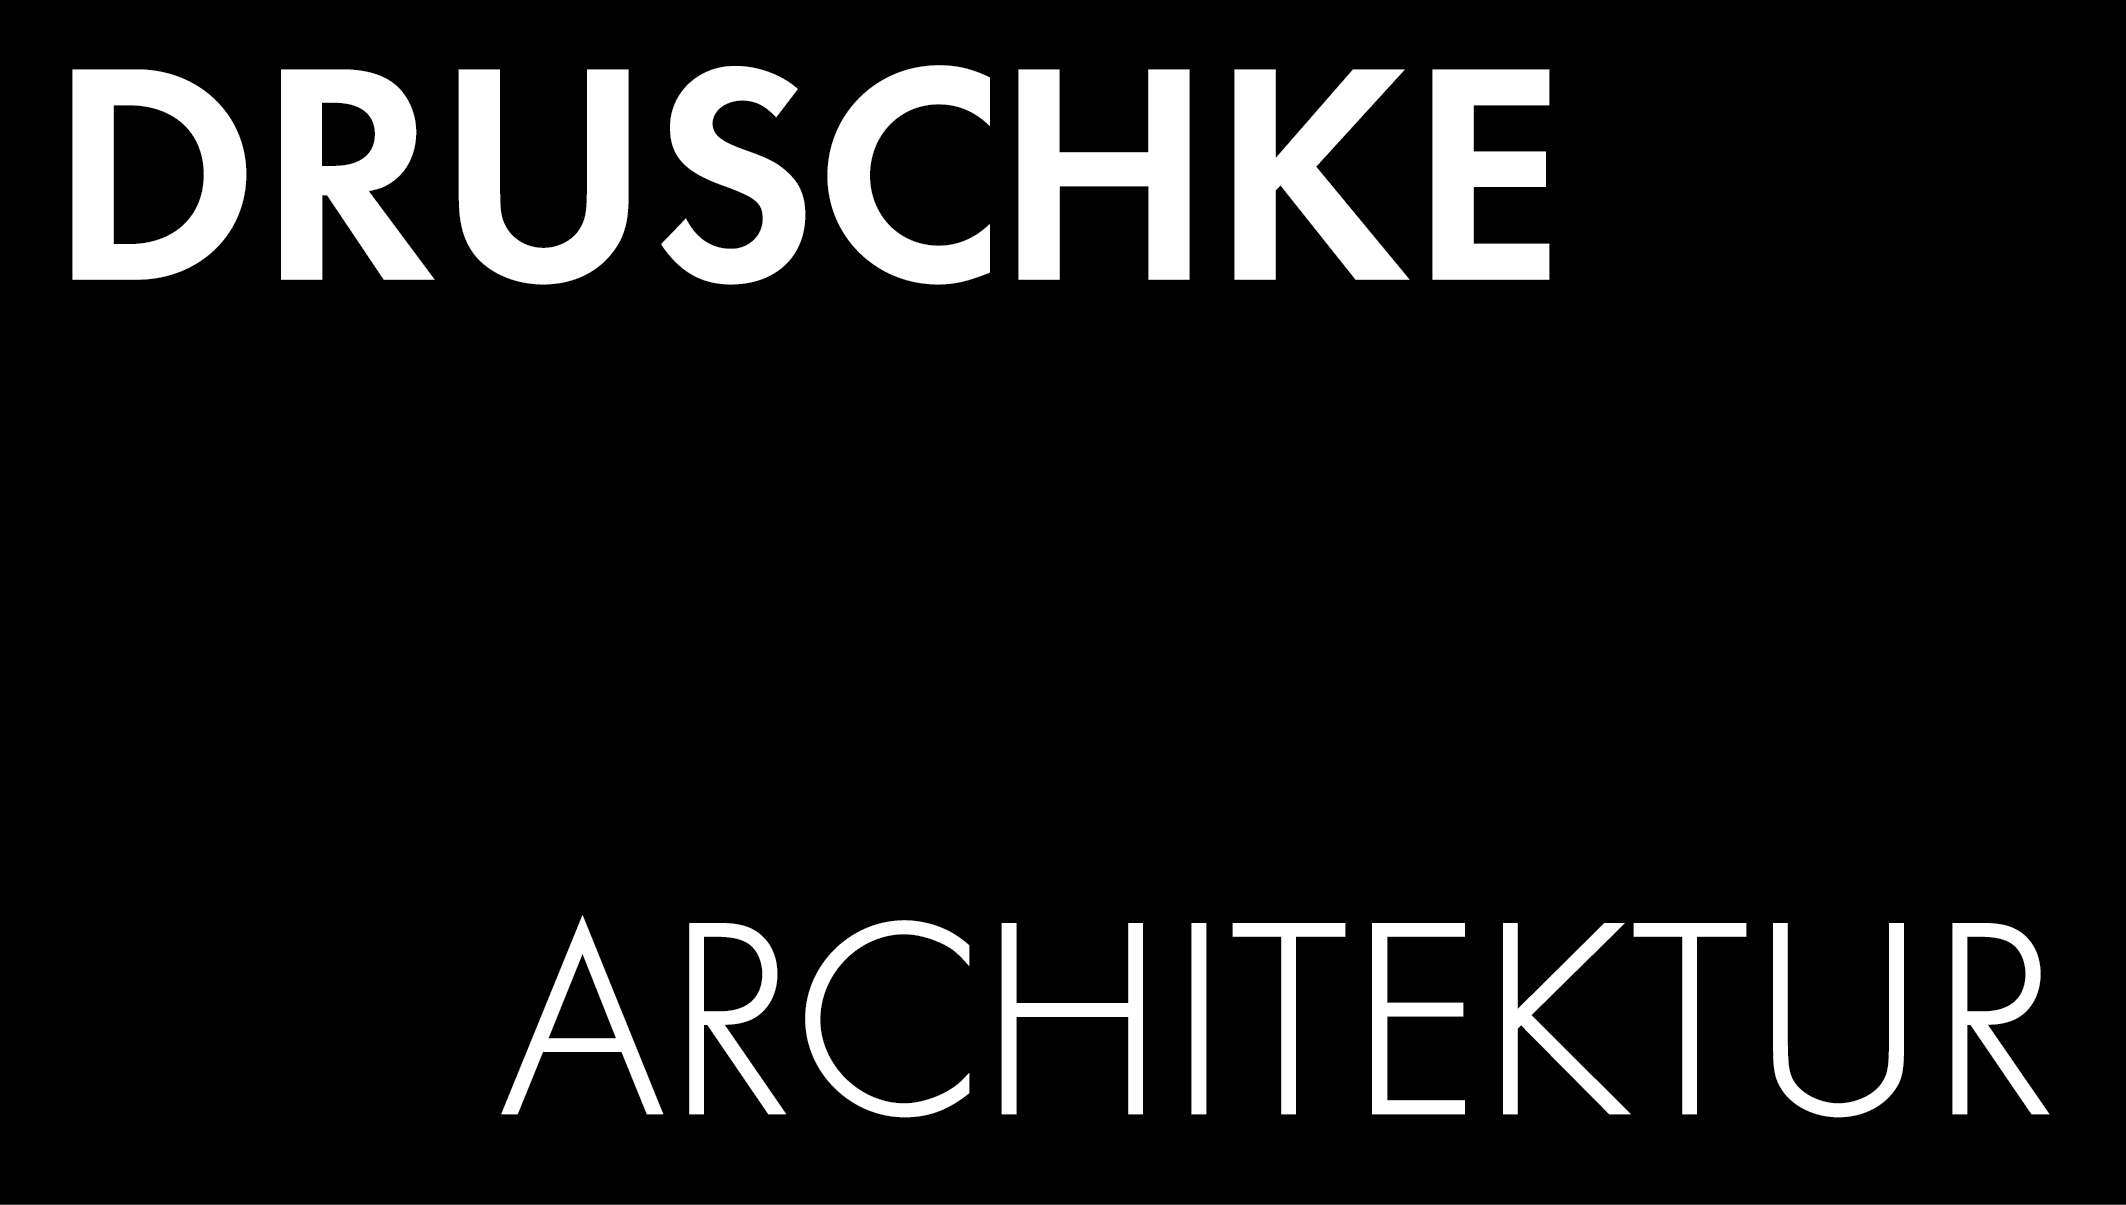 Druschke Architektur